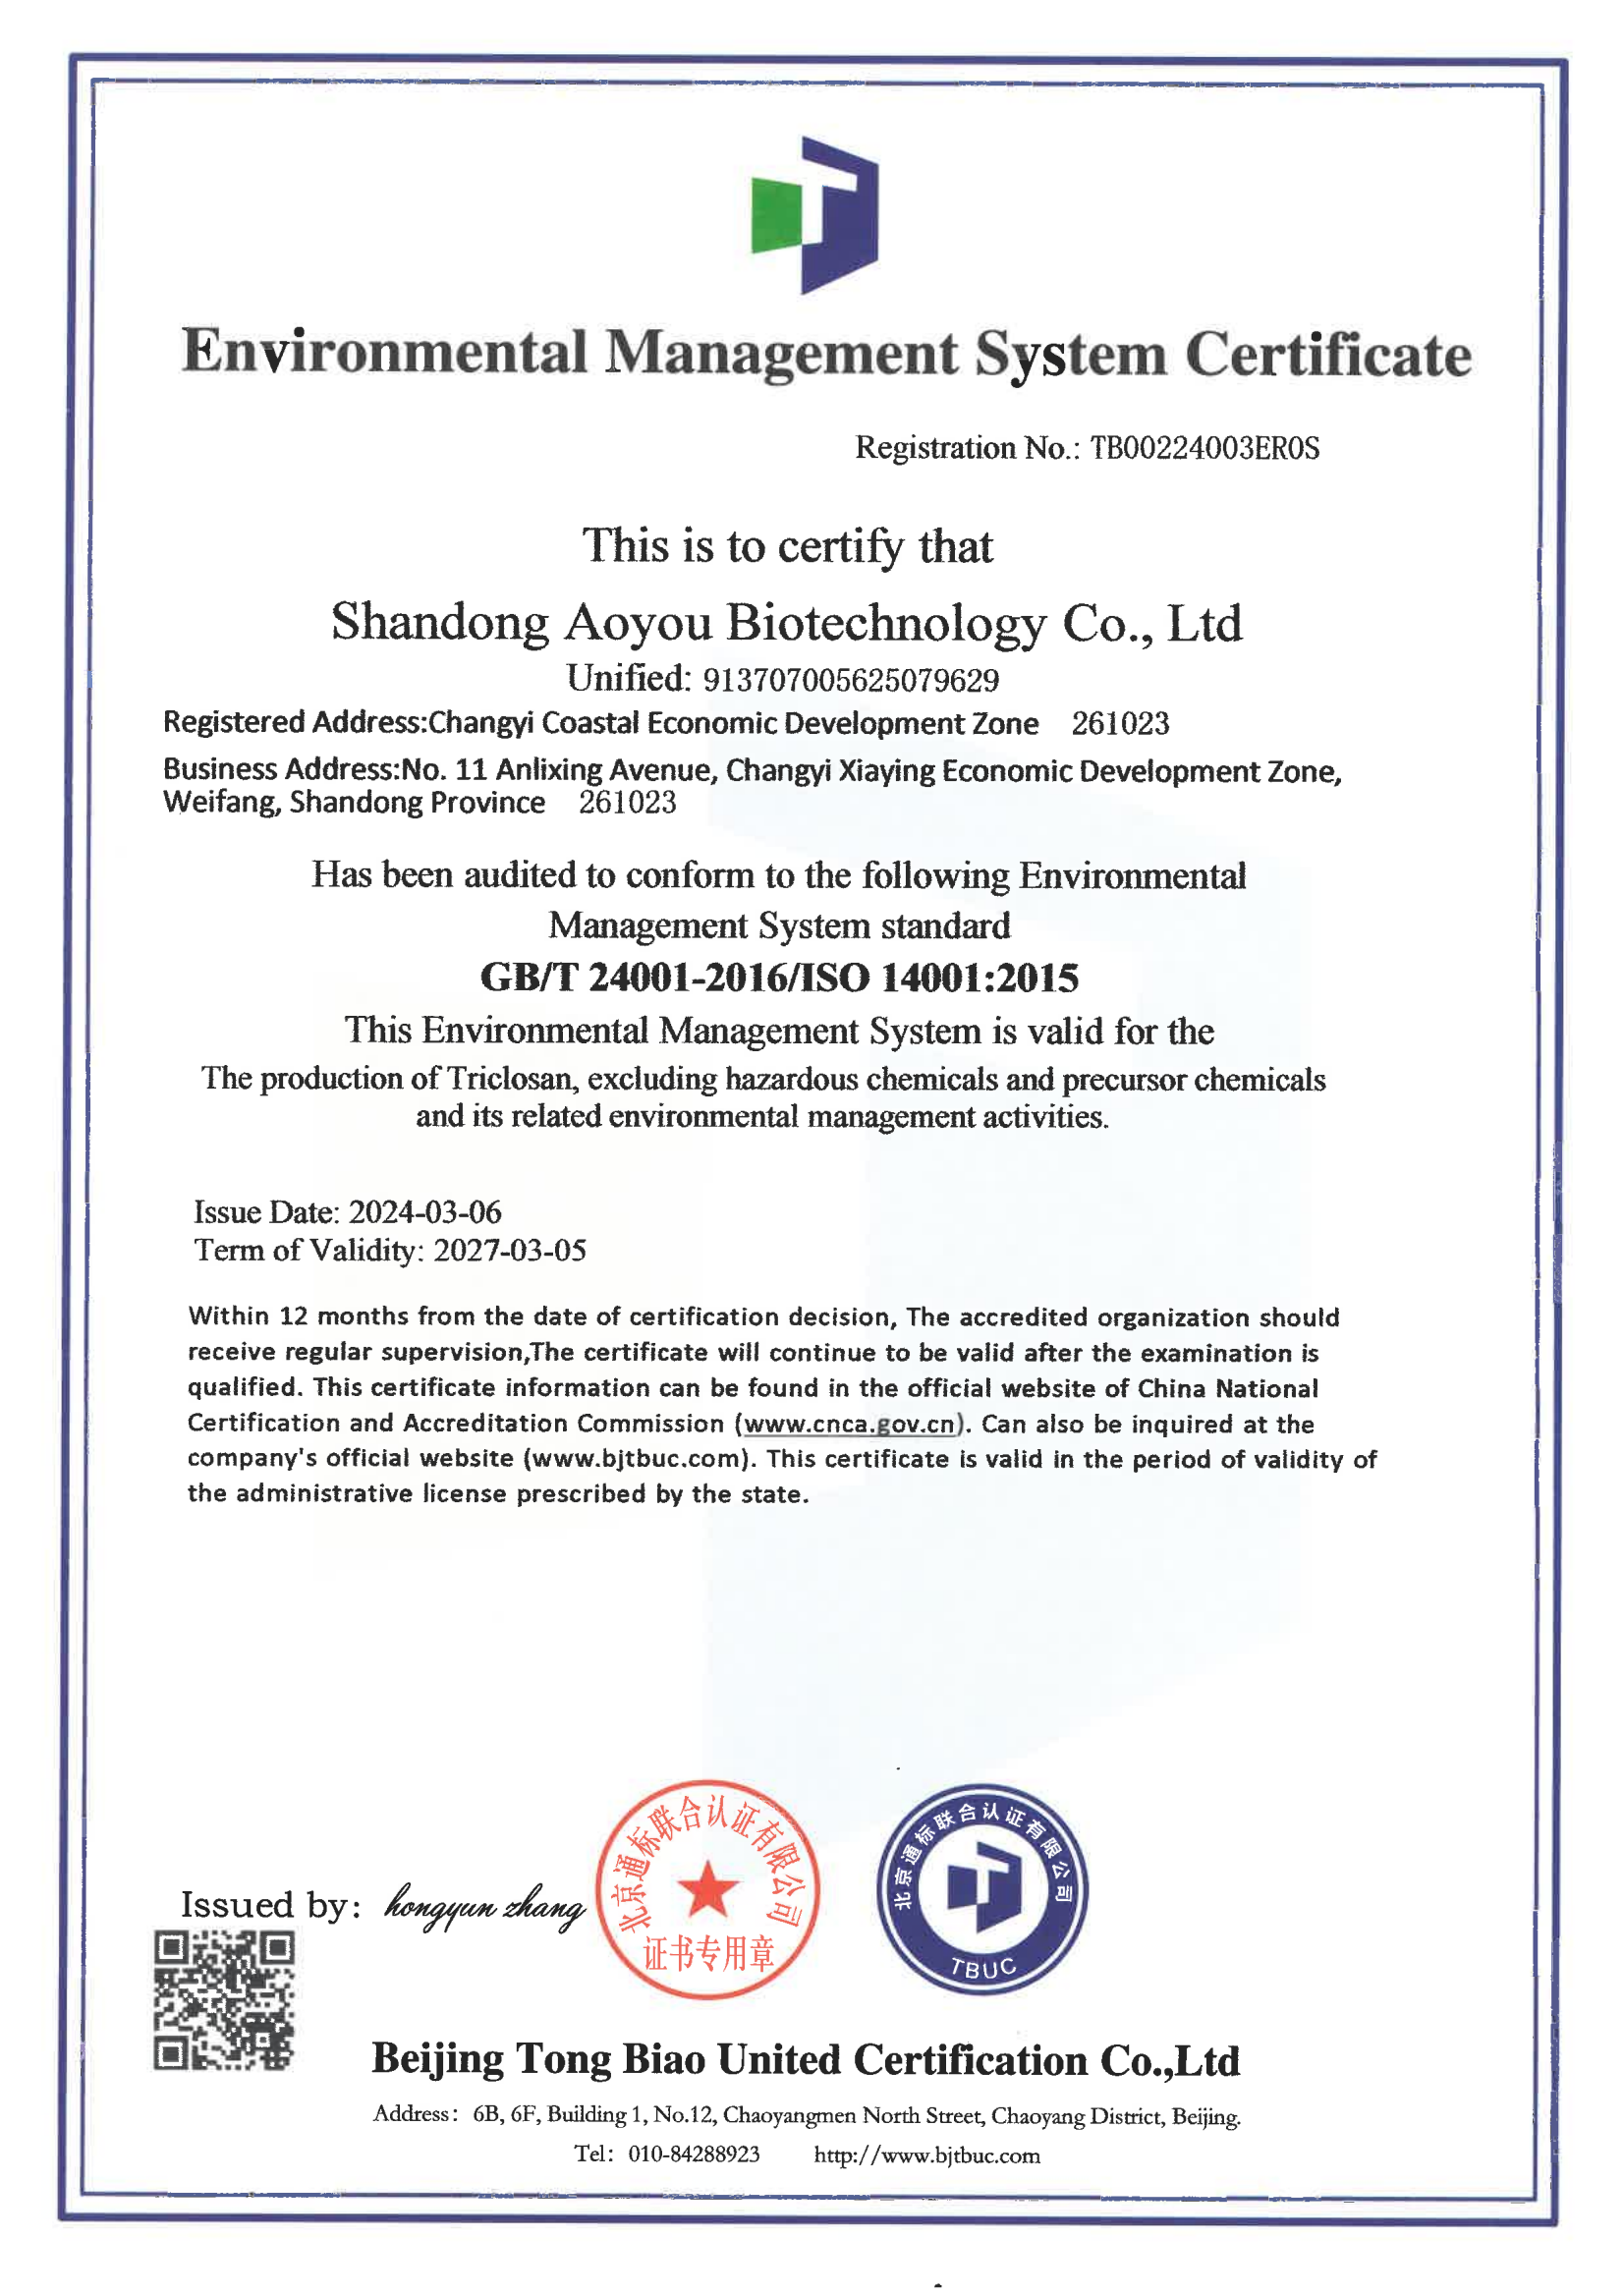 环境管理体系认证证书 (1).png